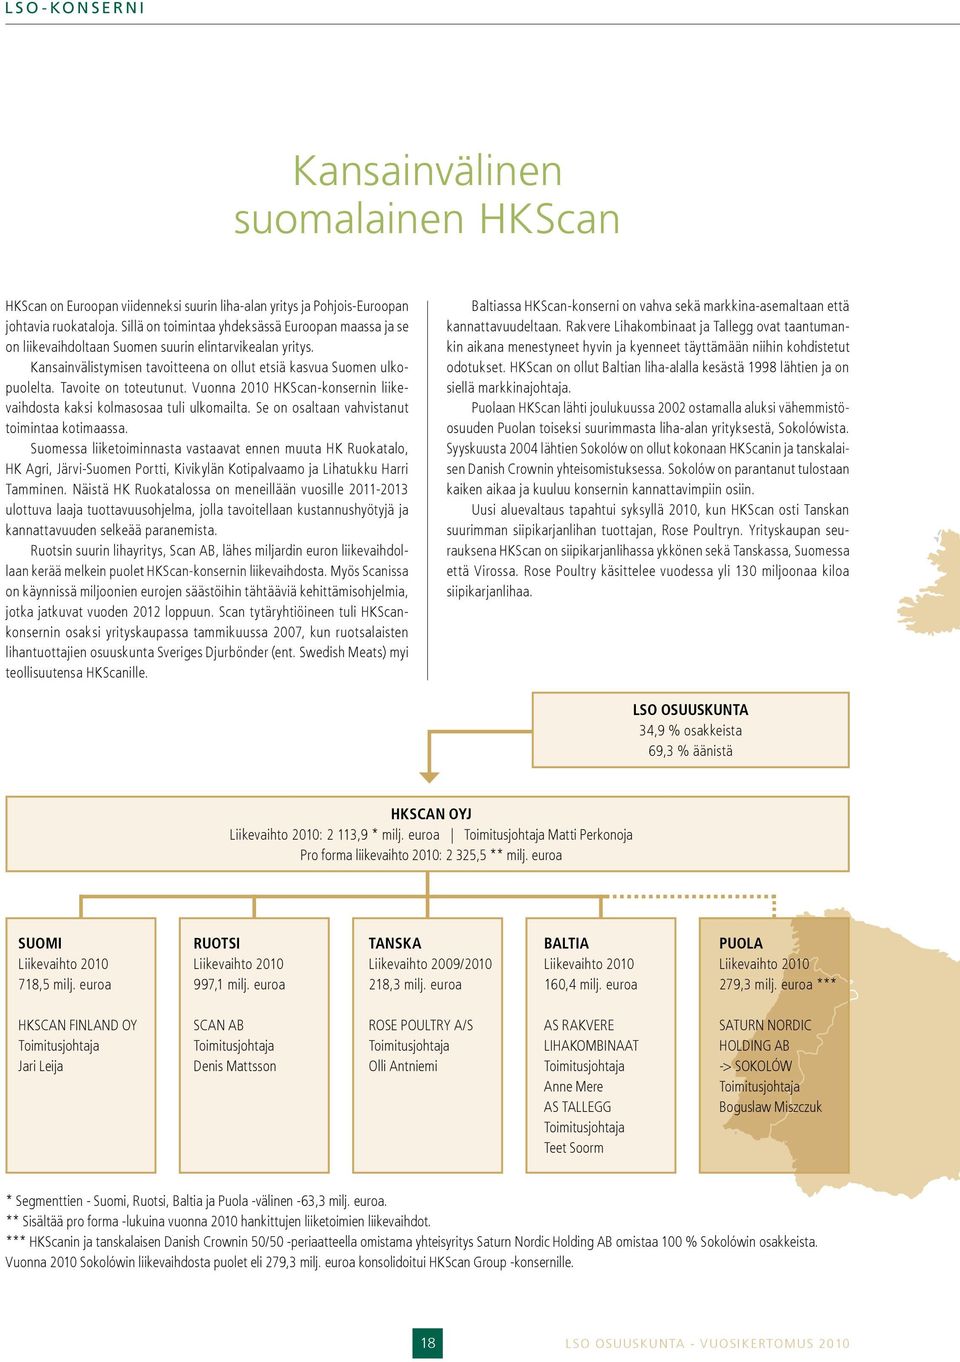 Tavoite on toteutunut. Vuonna 2010 HKScan-konsernin liikevaihdosta kaksi kolmasosaa tuli ulkomailta. Se on osaltaan vahvistanut toimintaa kotimaassa.